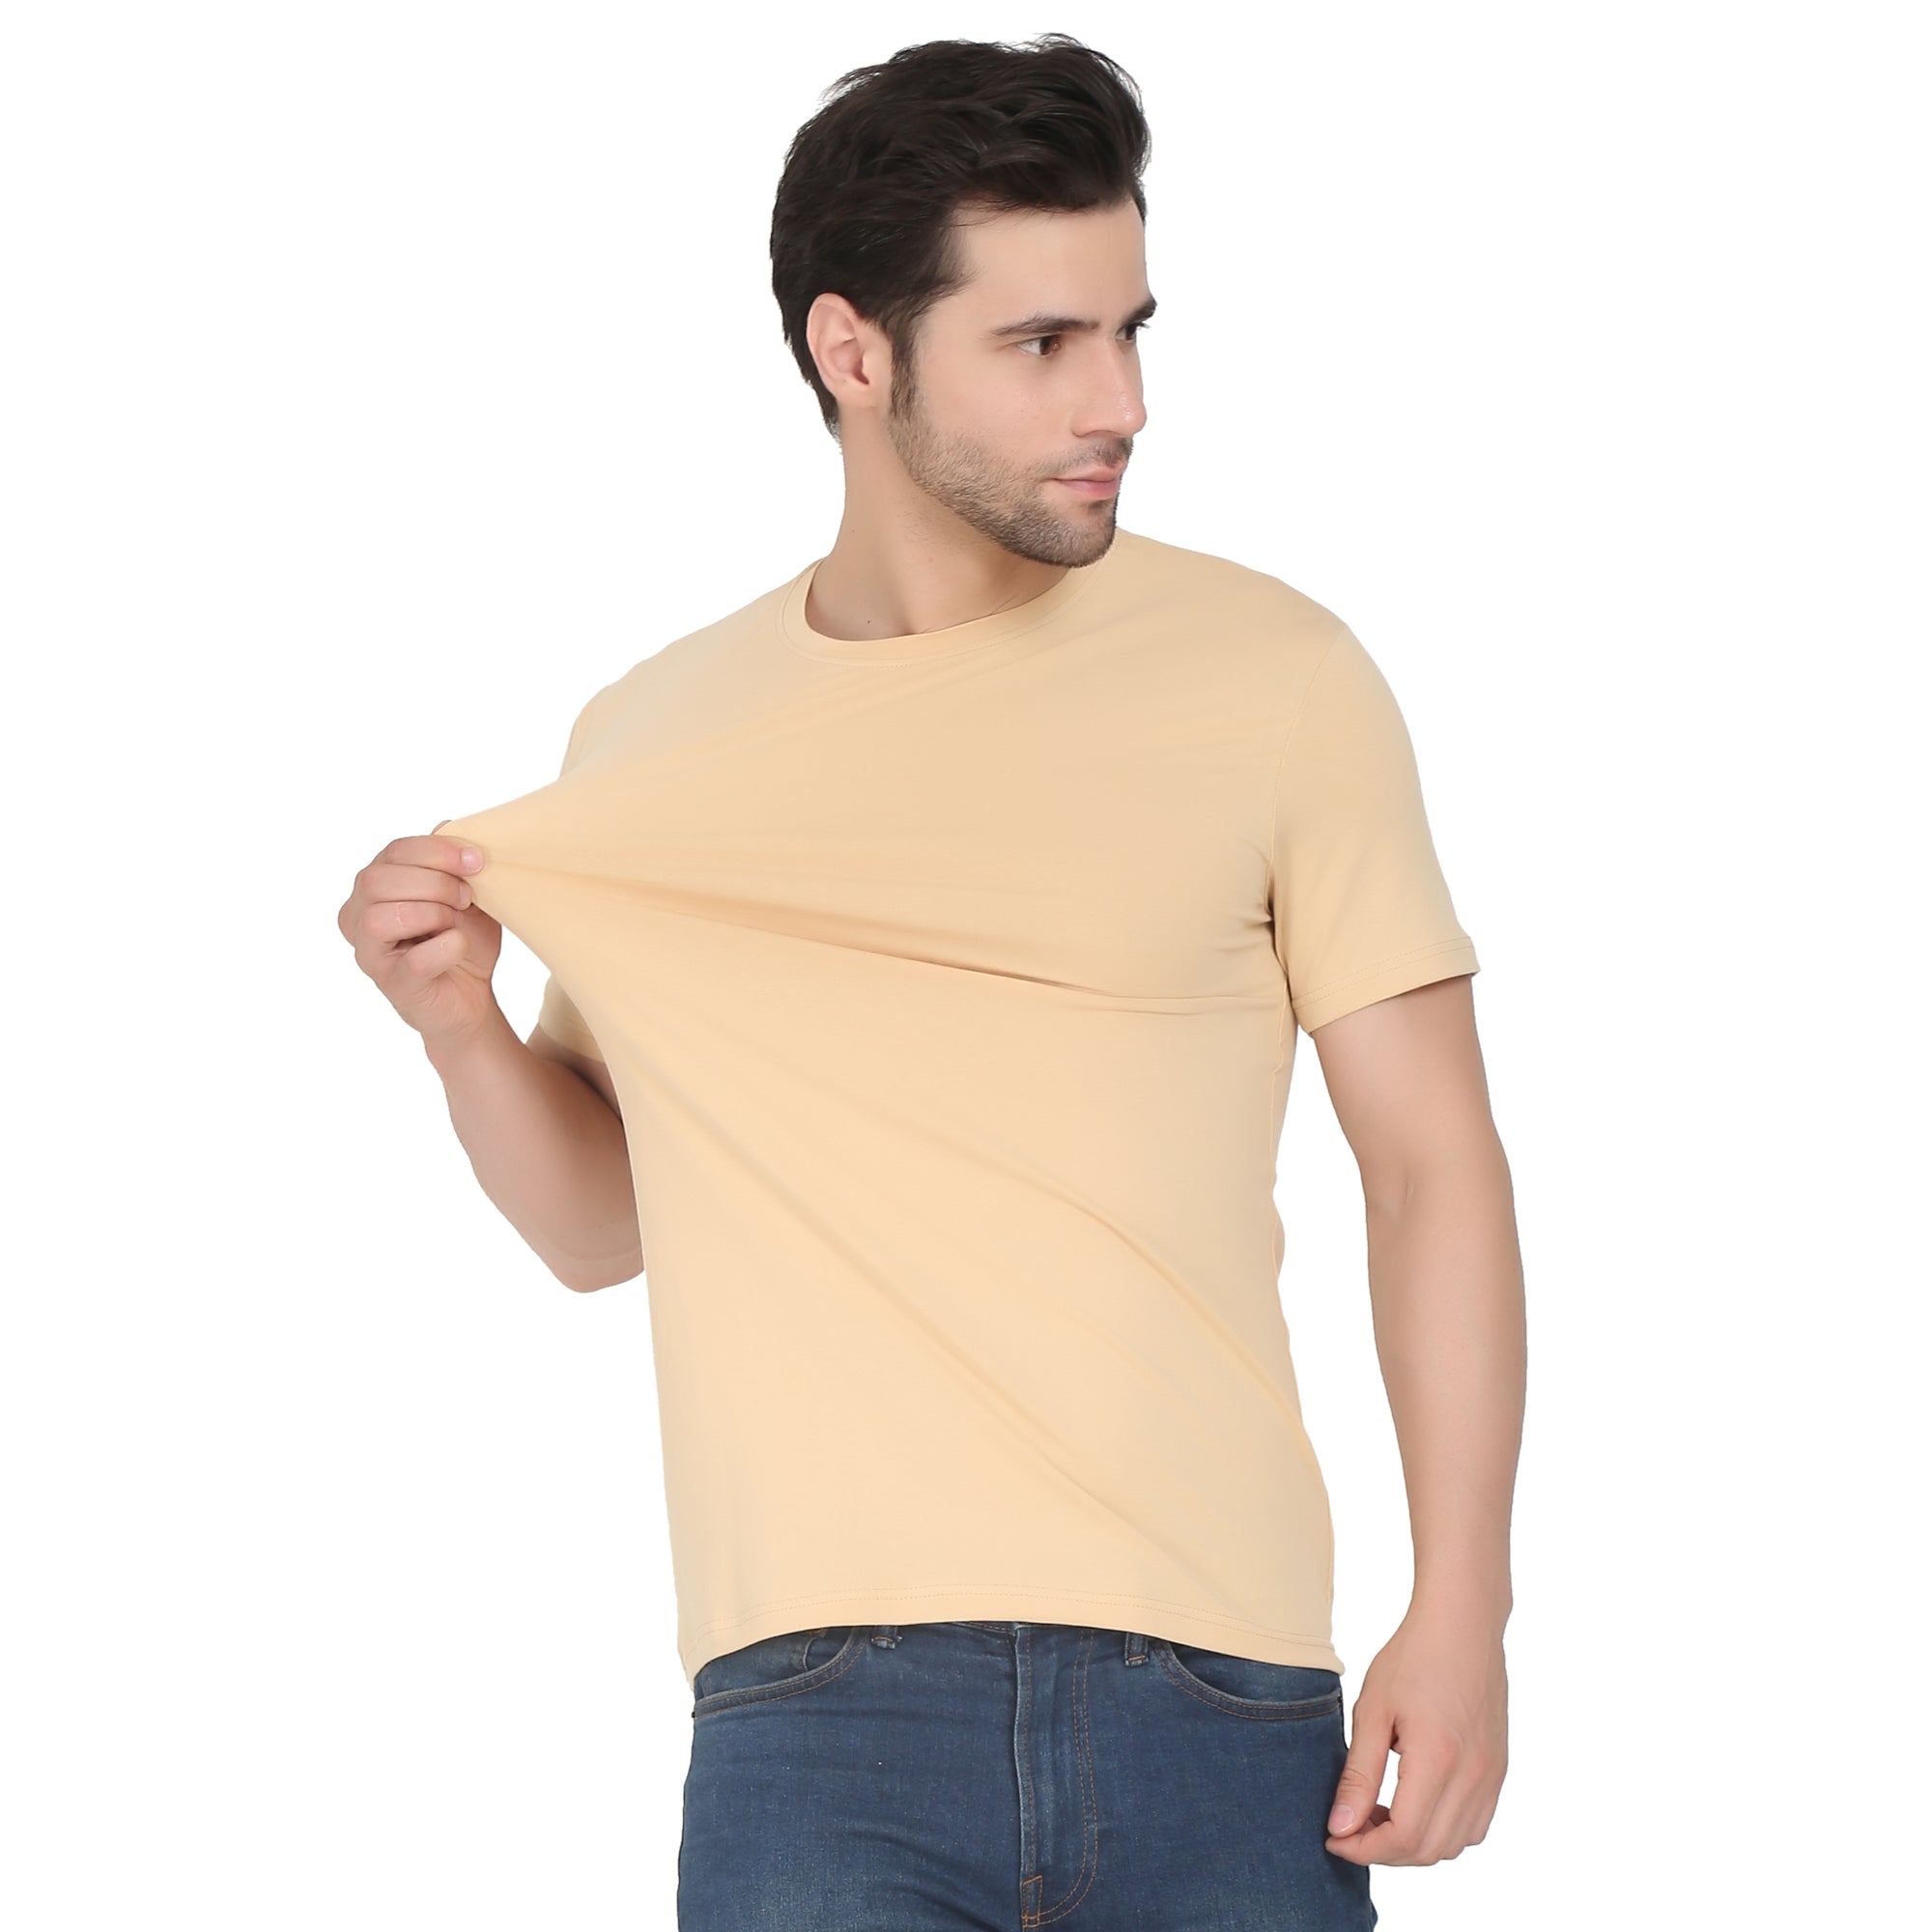 Men Four Way Stretch Cotton Plain T-shirt - Beige Colour